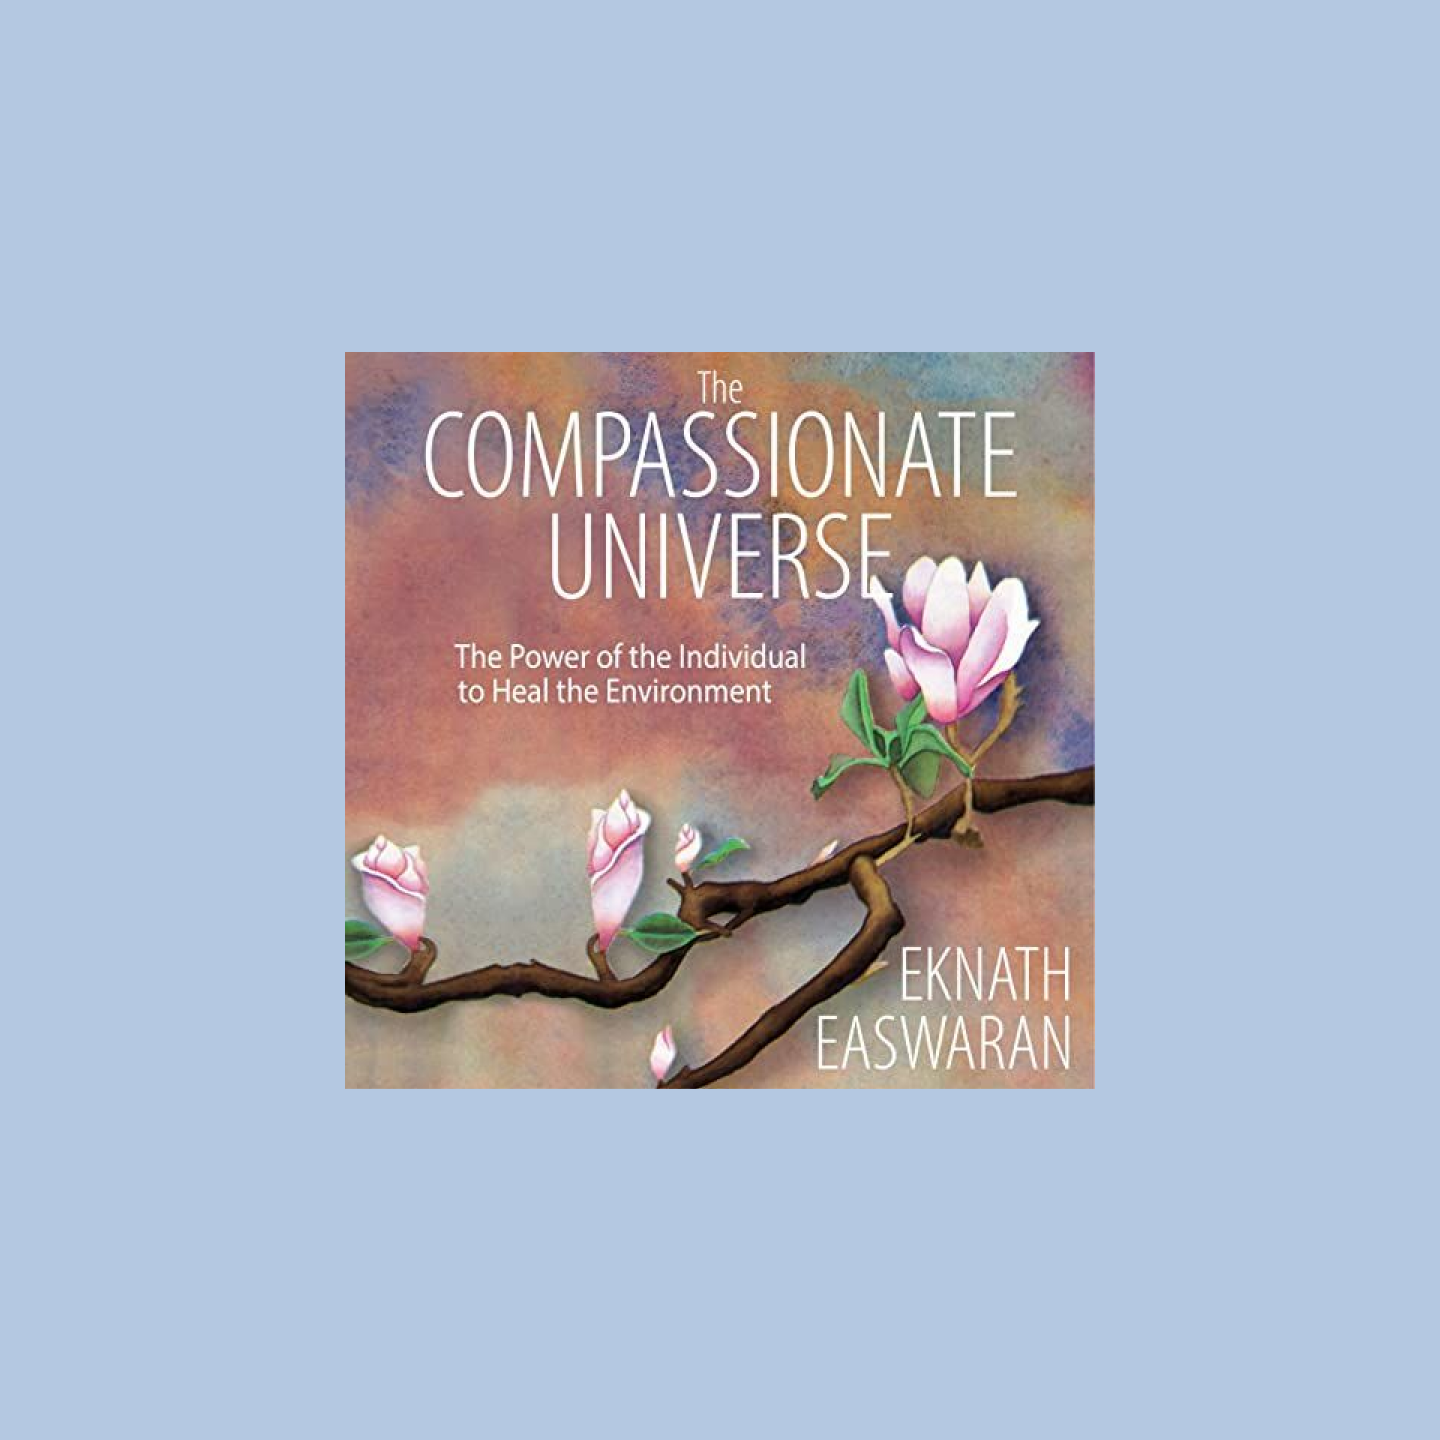 벚나무가 그려진 'The Compassionate Universe'라는 제목의 오디오북 표지